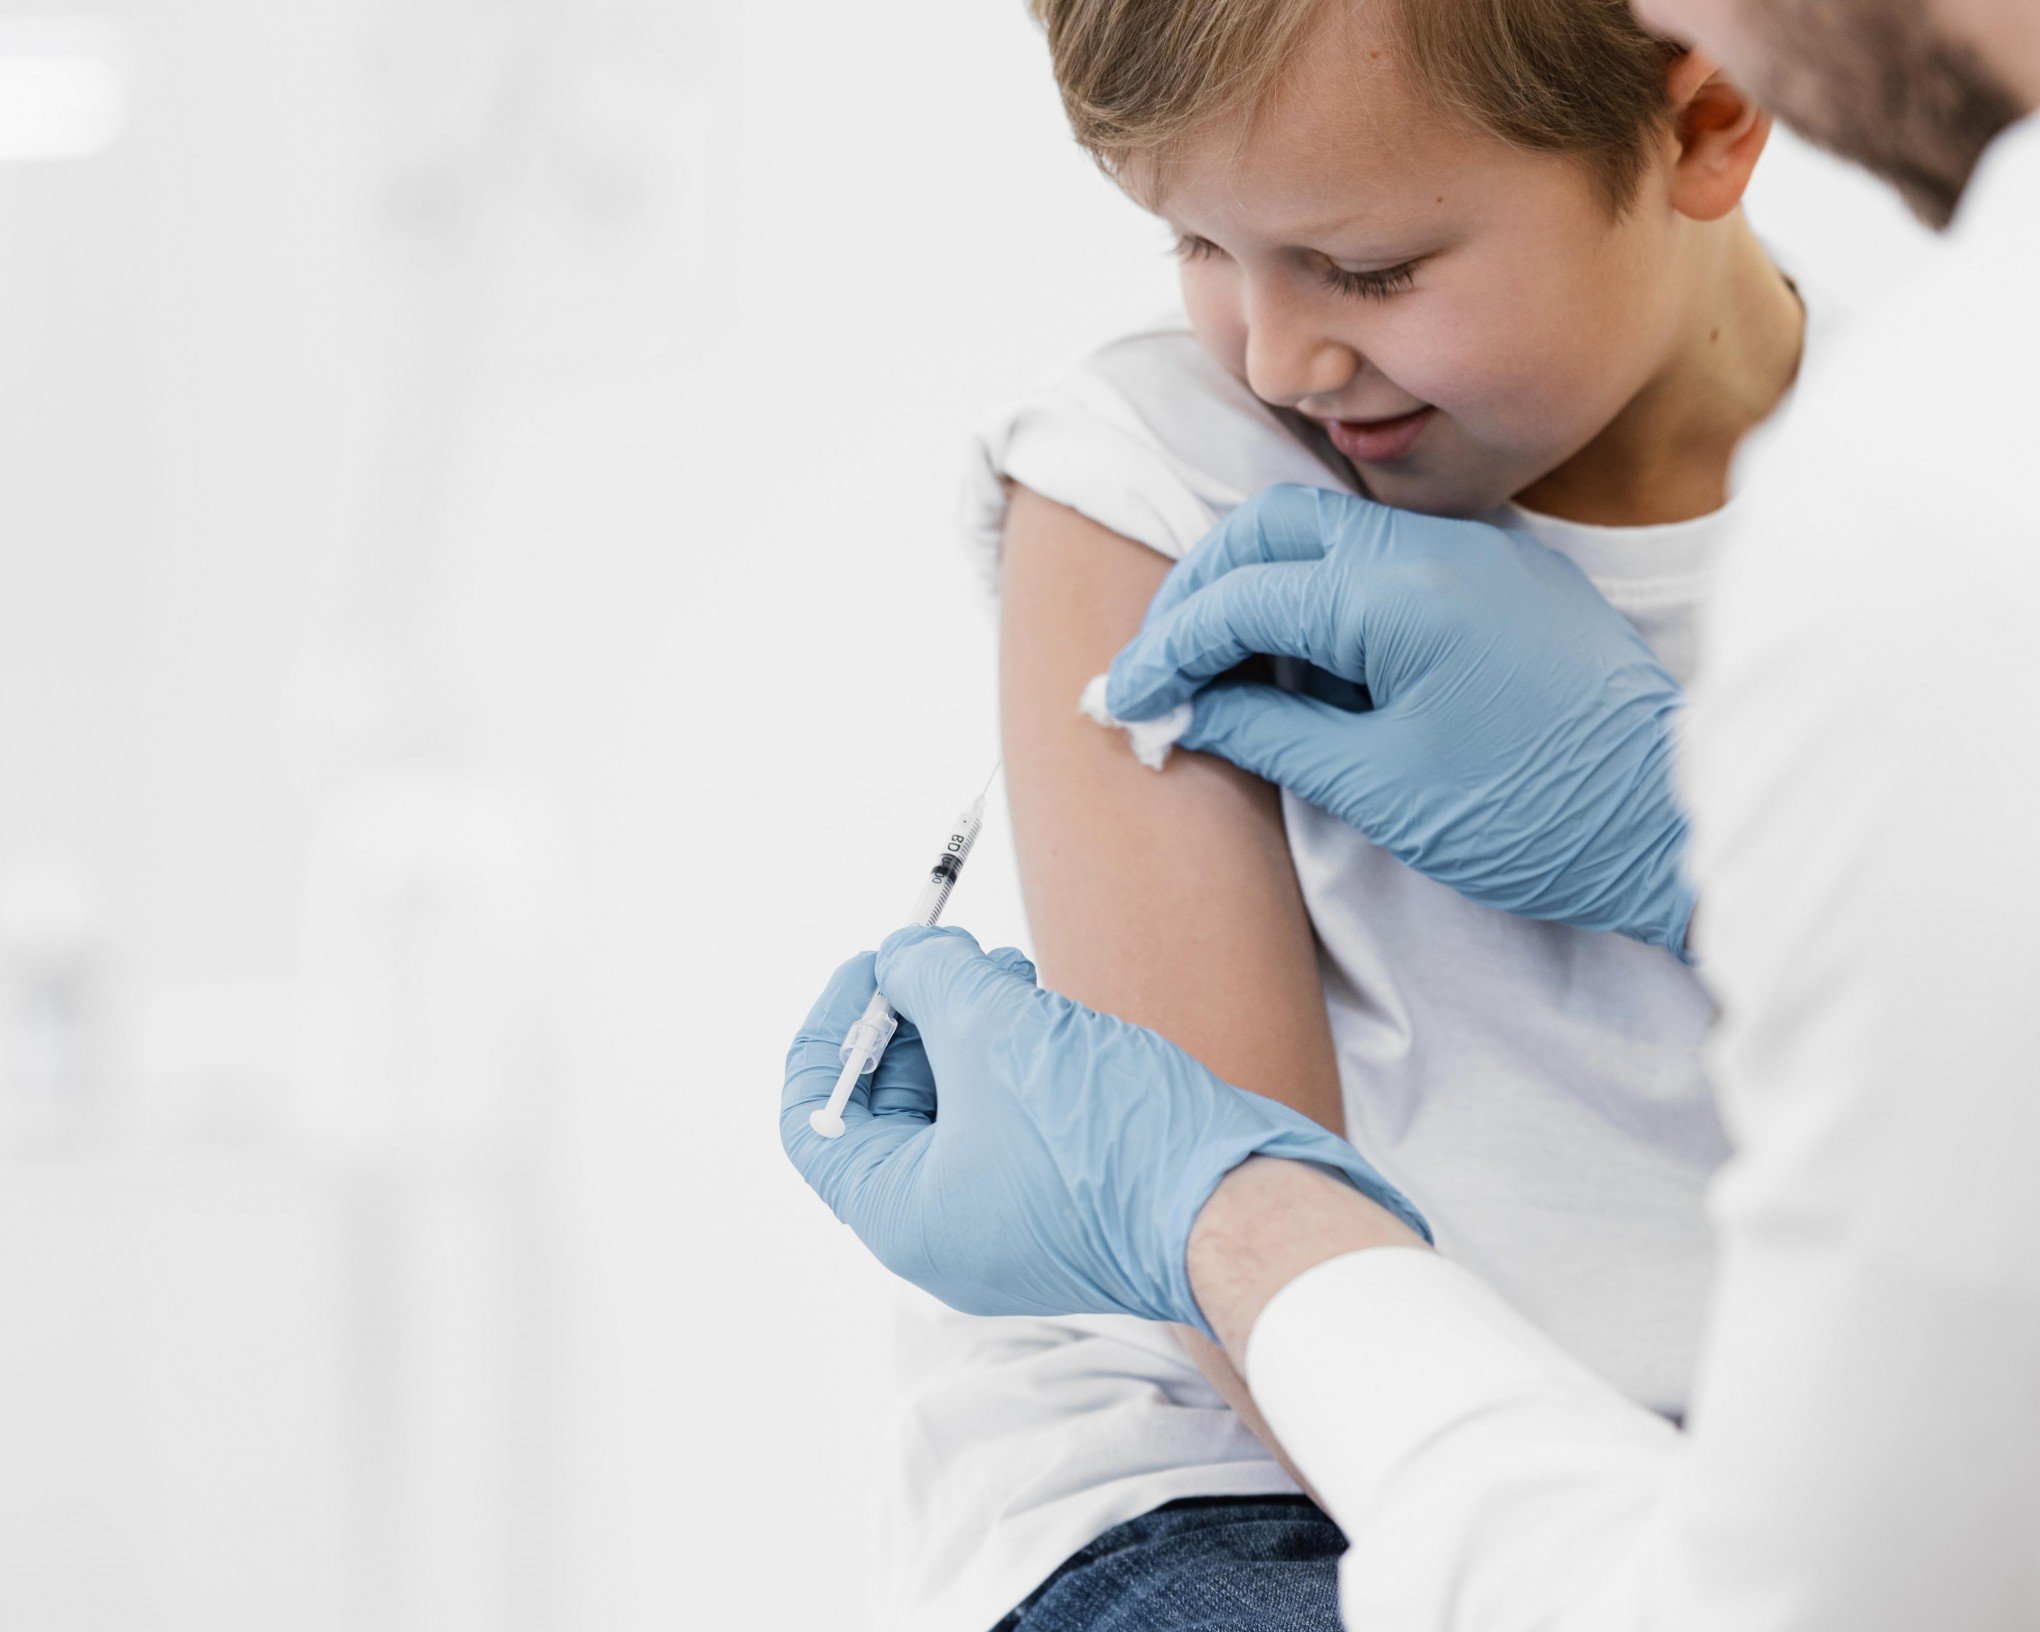 Postos de saúde estarão abertos para o Dia D de vacinação neste sábado; veja os horários